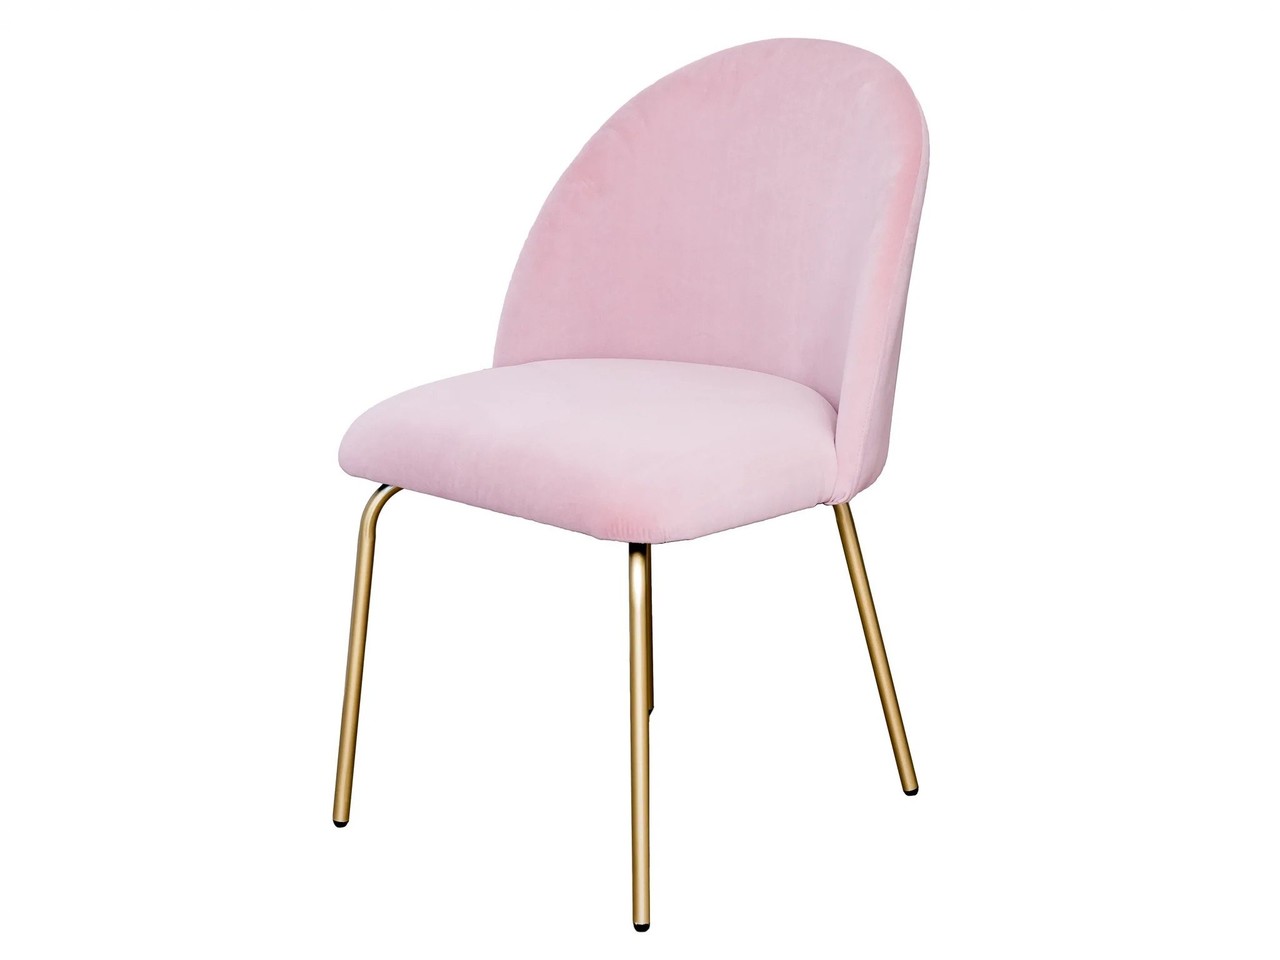 Trucco sedia rosa - Bright Beauty Vanity